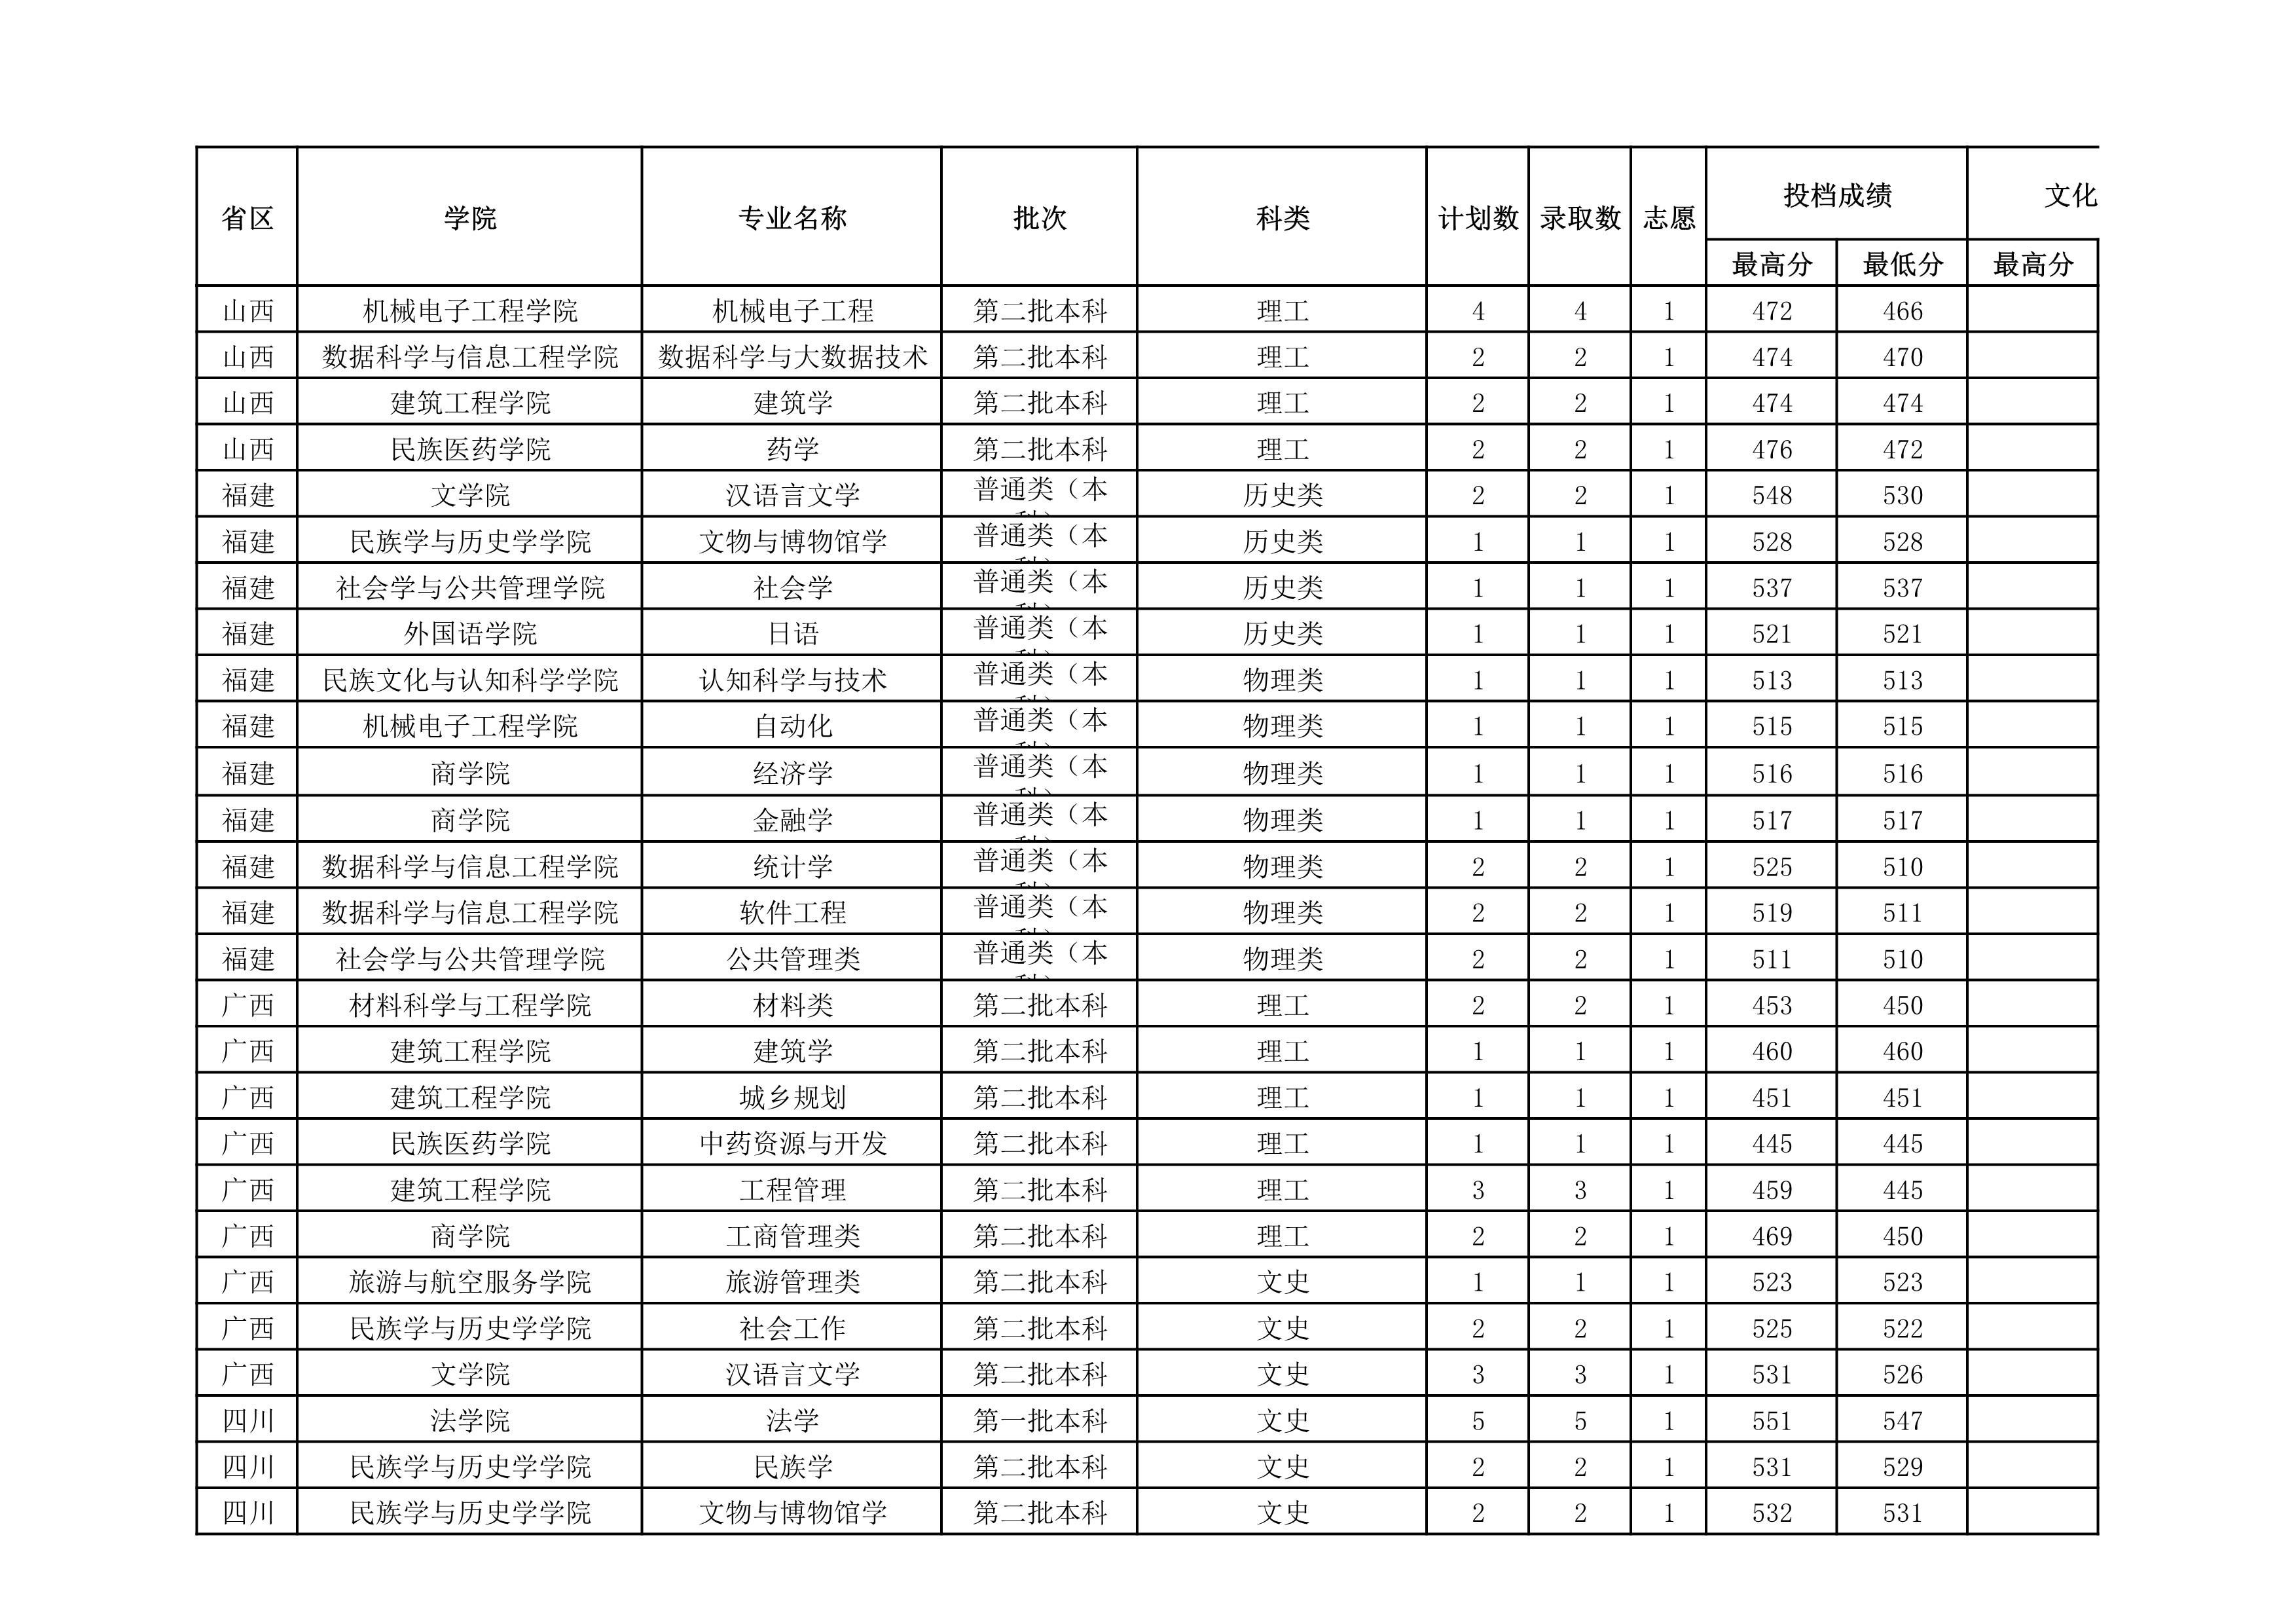 贵州民族大学2021年省外录取分数情况统计表_20220414154148_4.jpg